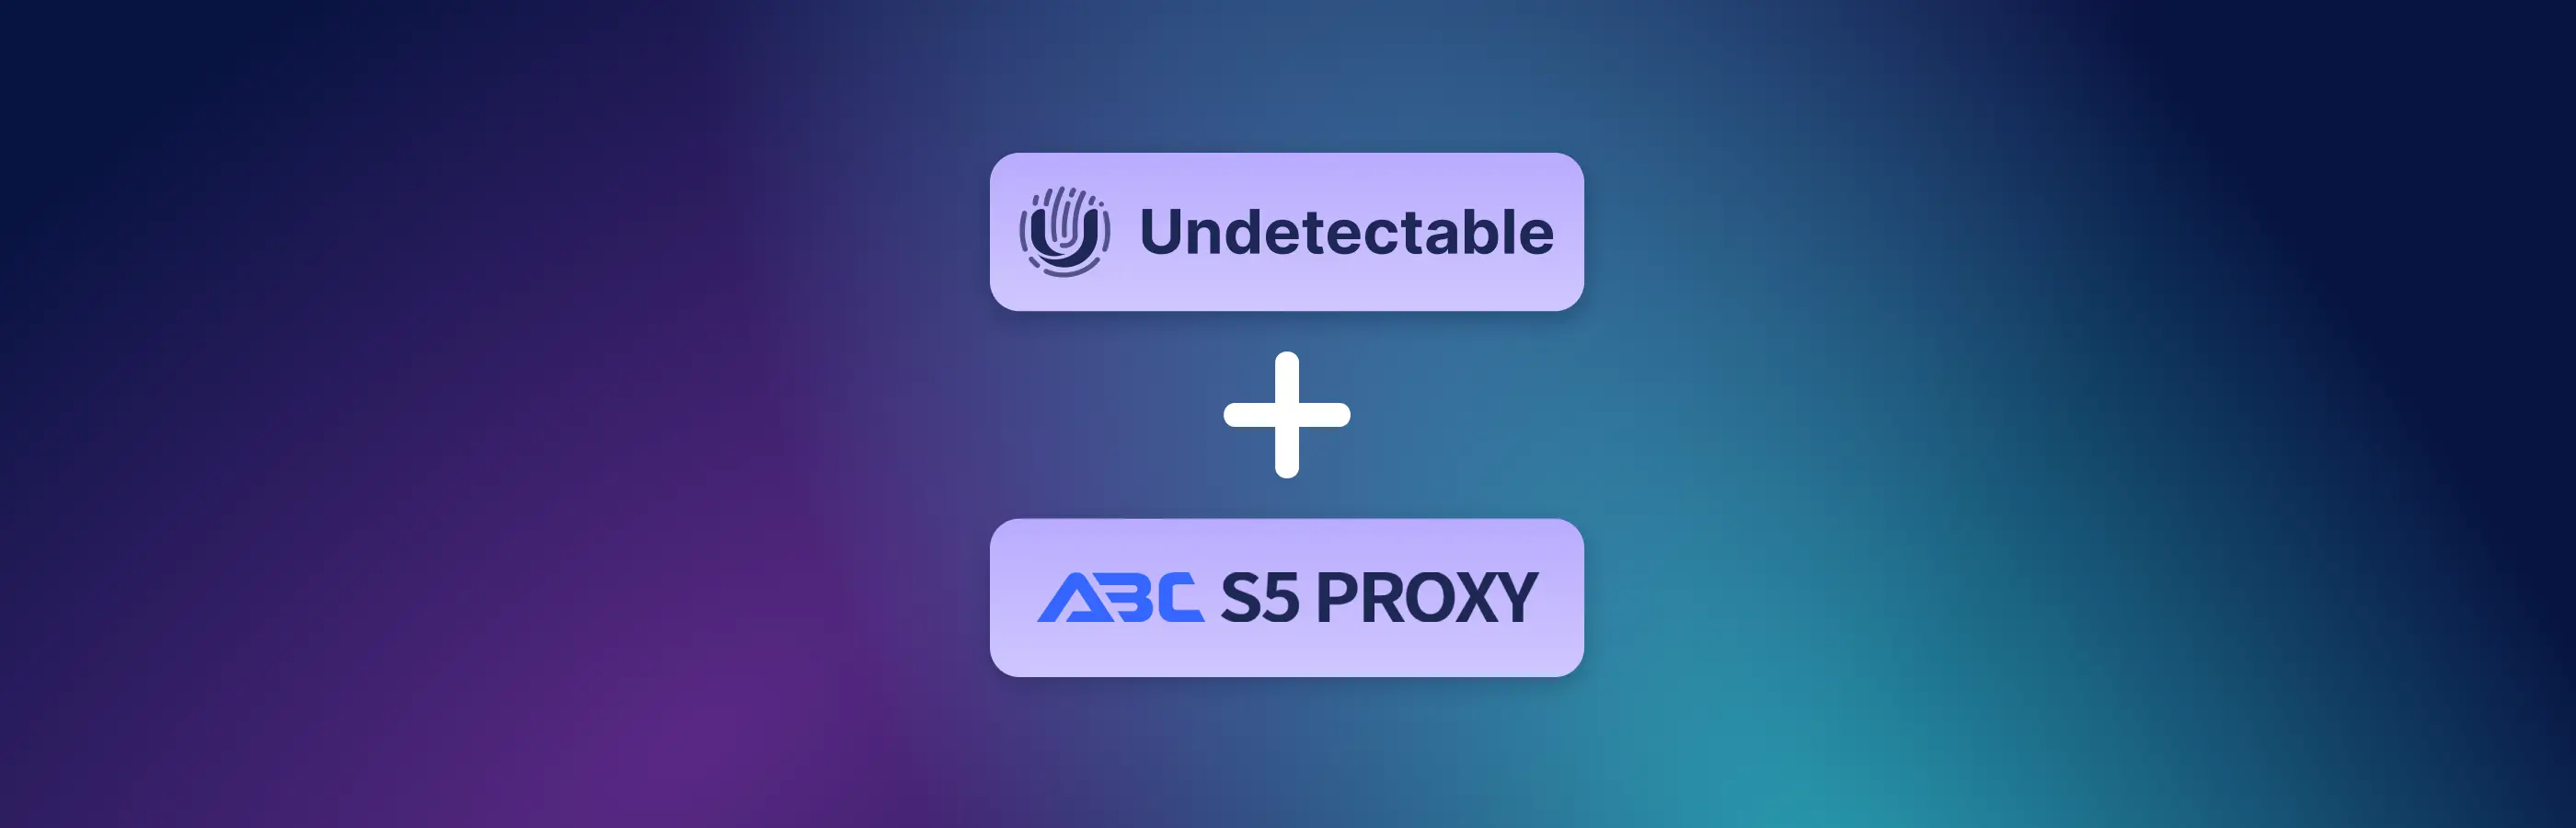 Hướng dẫn kết nối ABCProxy với Undetectable